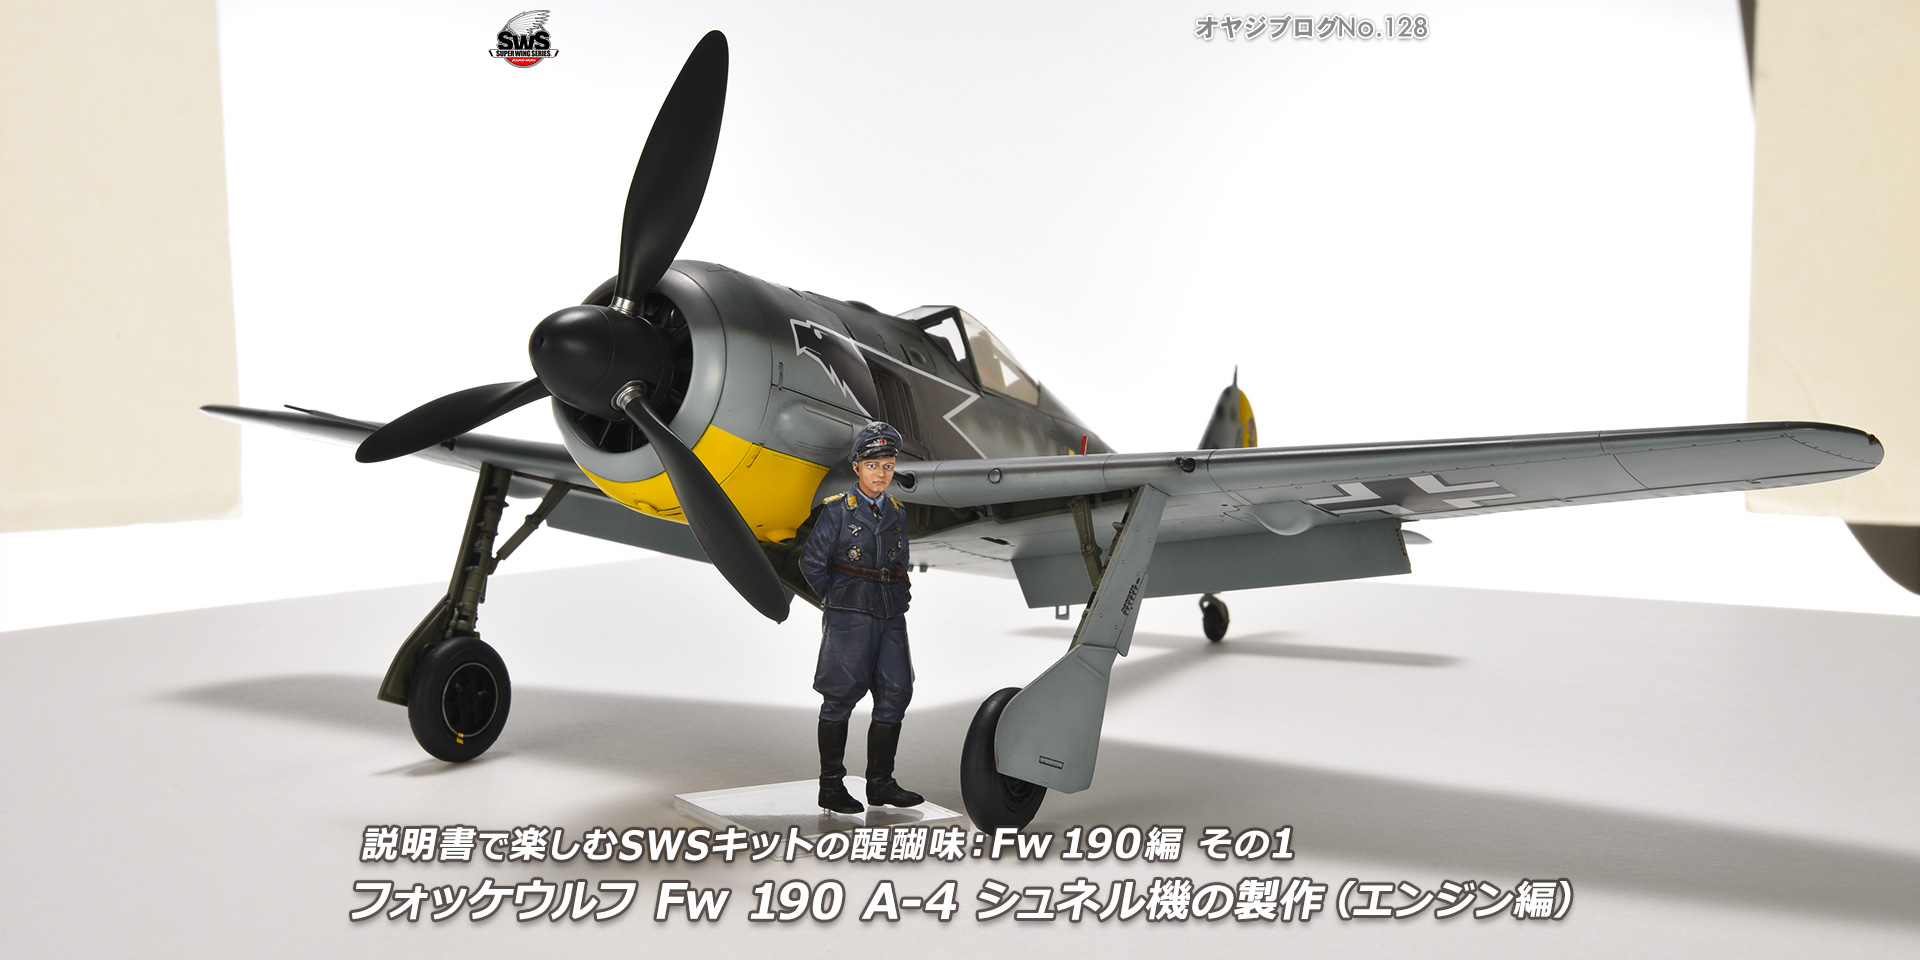 オヤジブログNo.128 - 説明書で楽しむSWSキットの醍醐味： Fw 190編その1　フォッケウルフ Fw 190 A-4 シュネル機の製作（エンジン編）